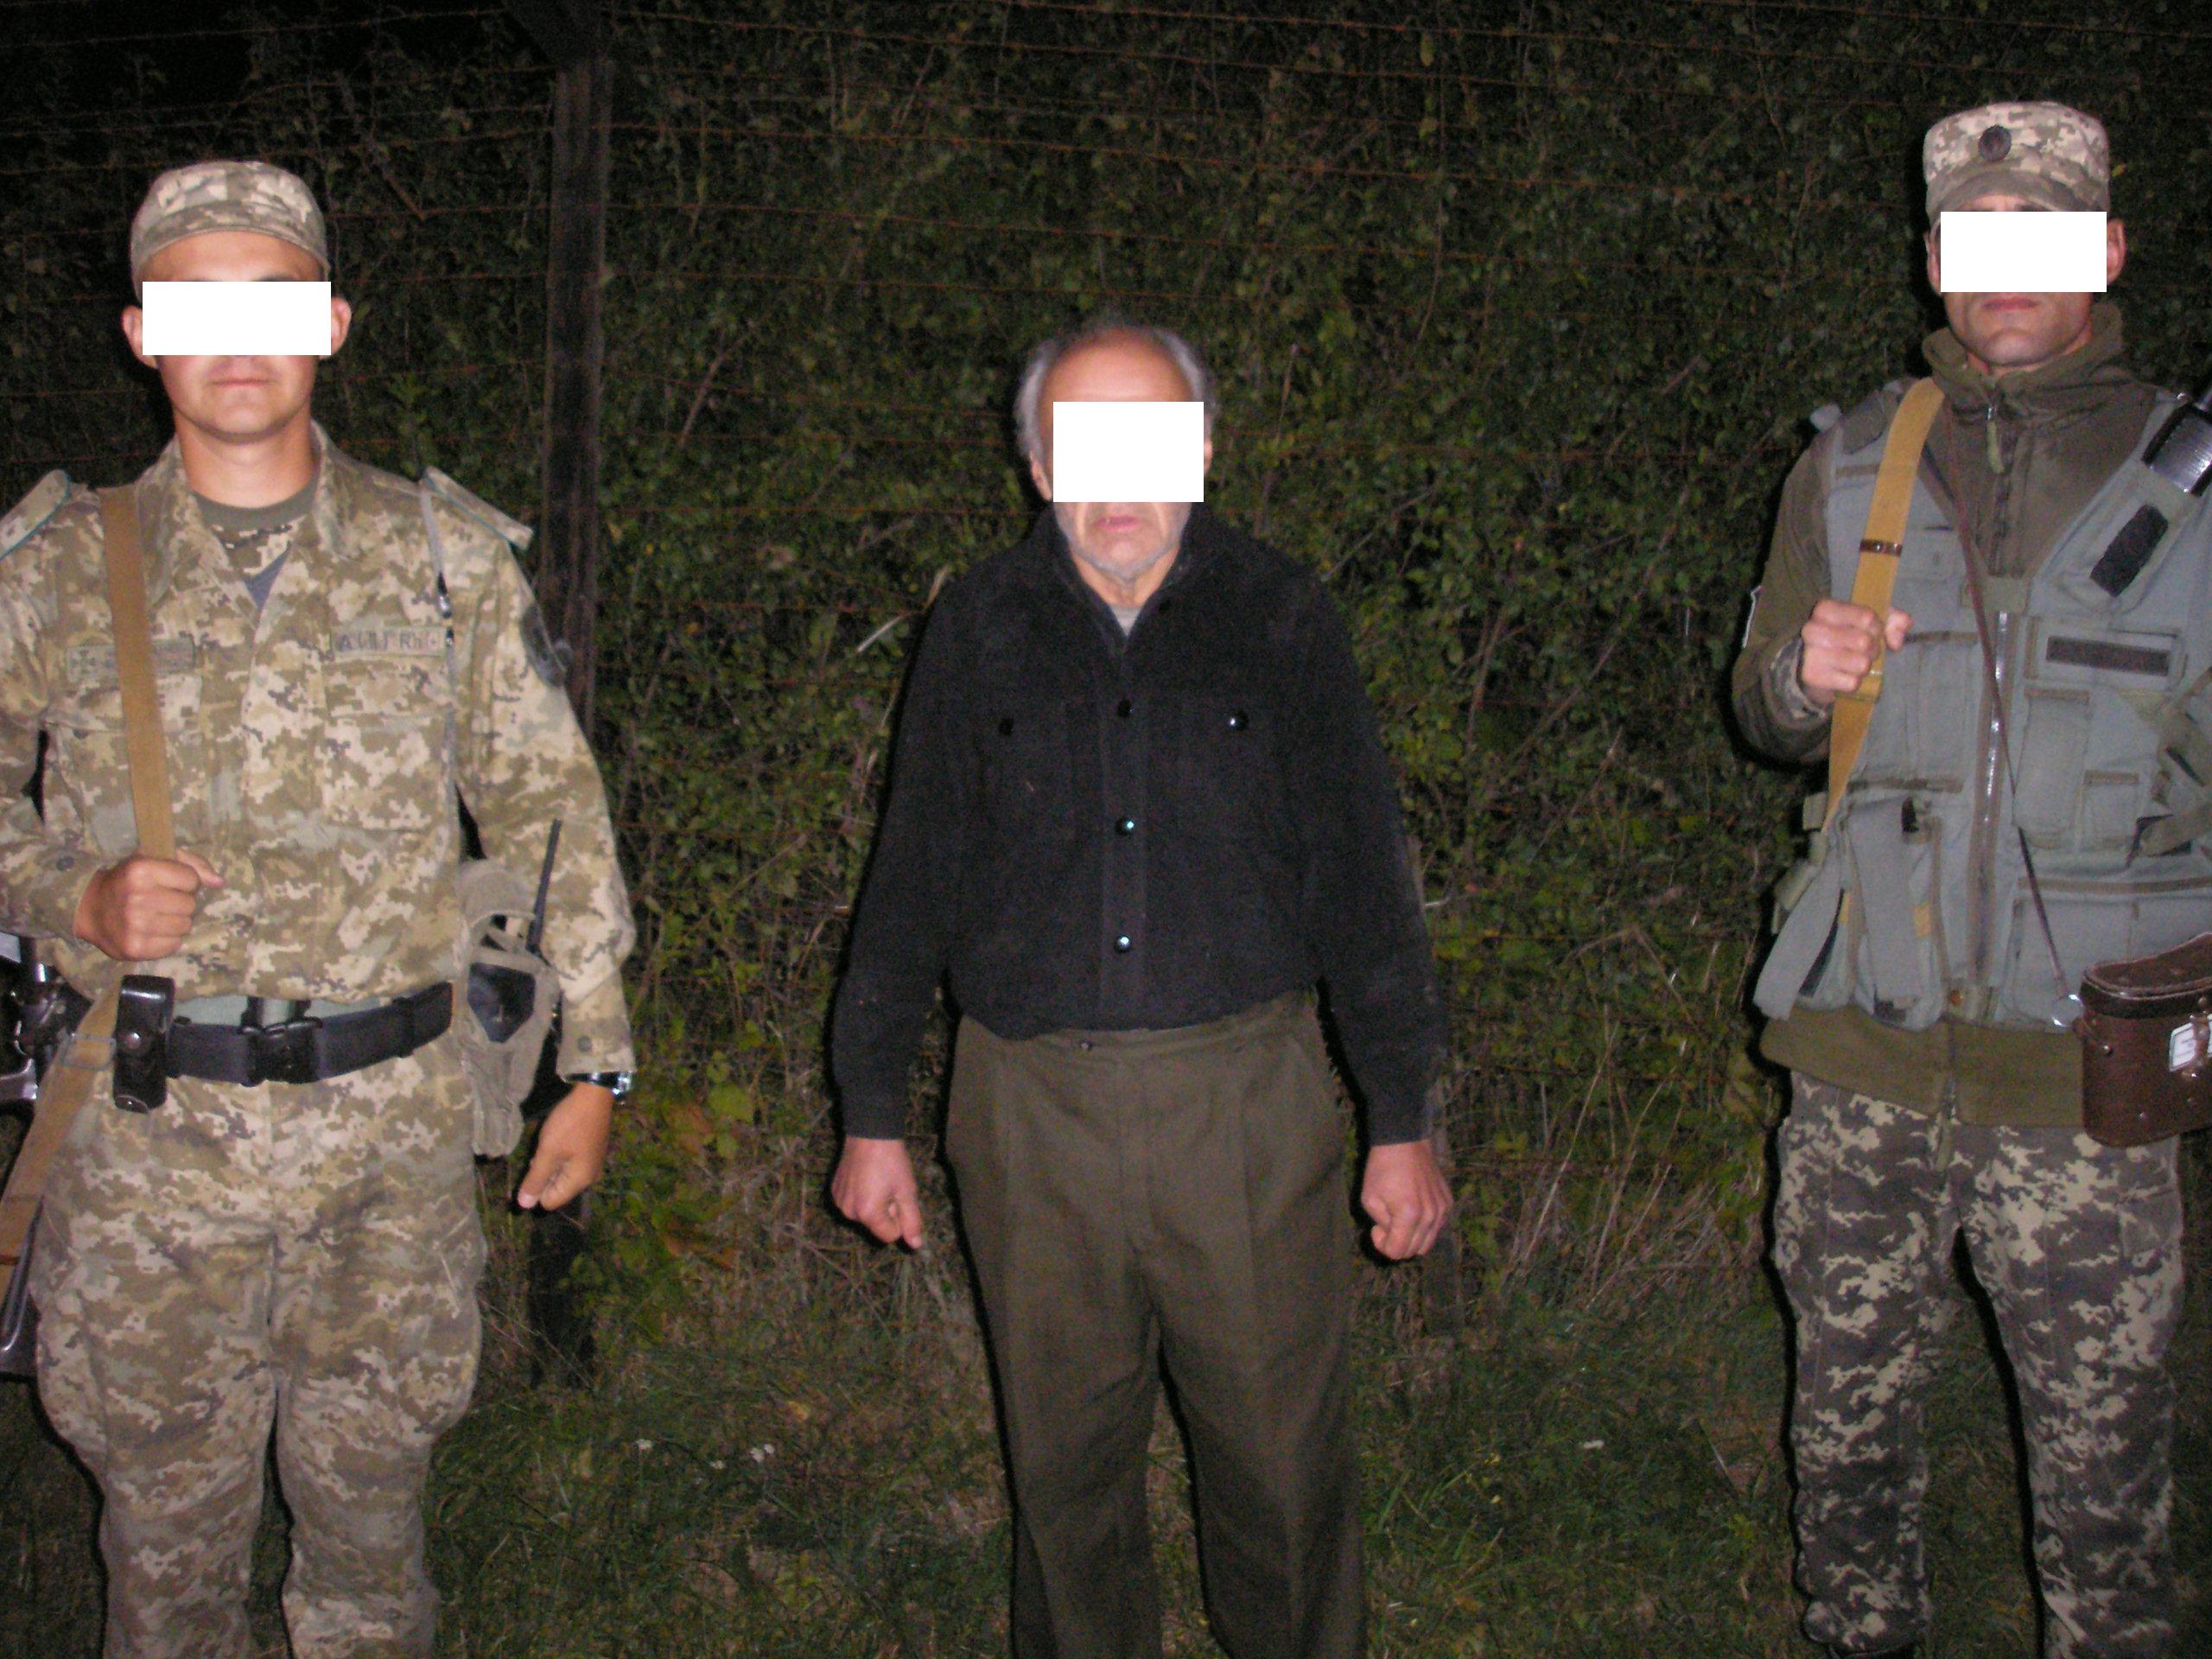 Вчера пограничники отдела «Тиса» Чопского отряда задержали гражданина Украины, который пытался в обход пункта пропуска незаконно пересечь границу и попасть в Словакию.